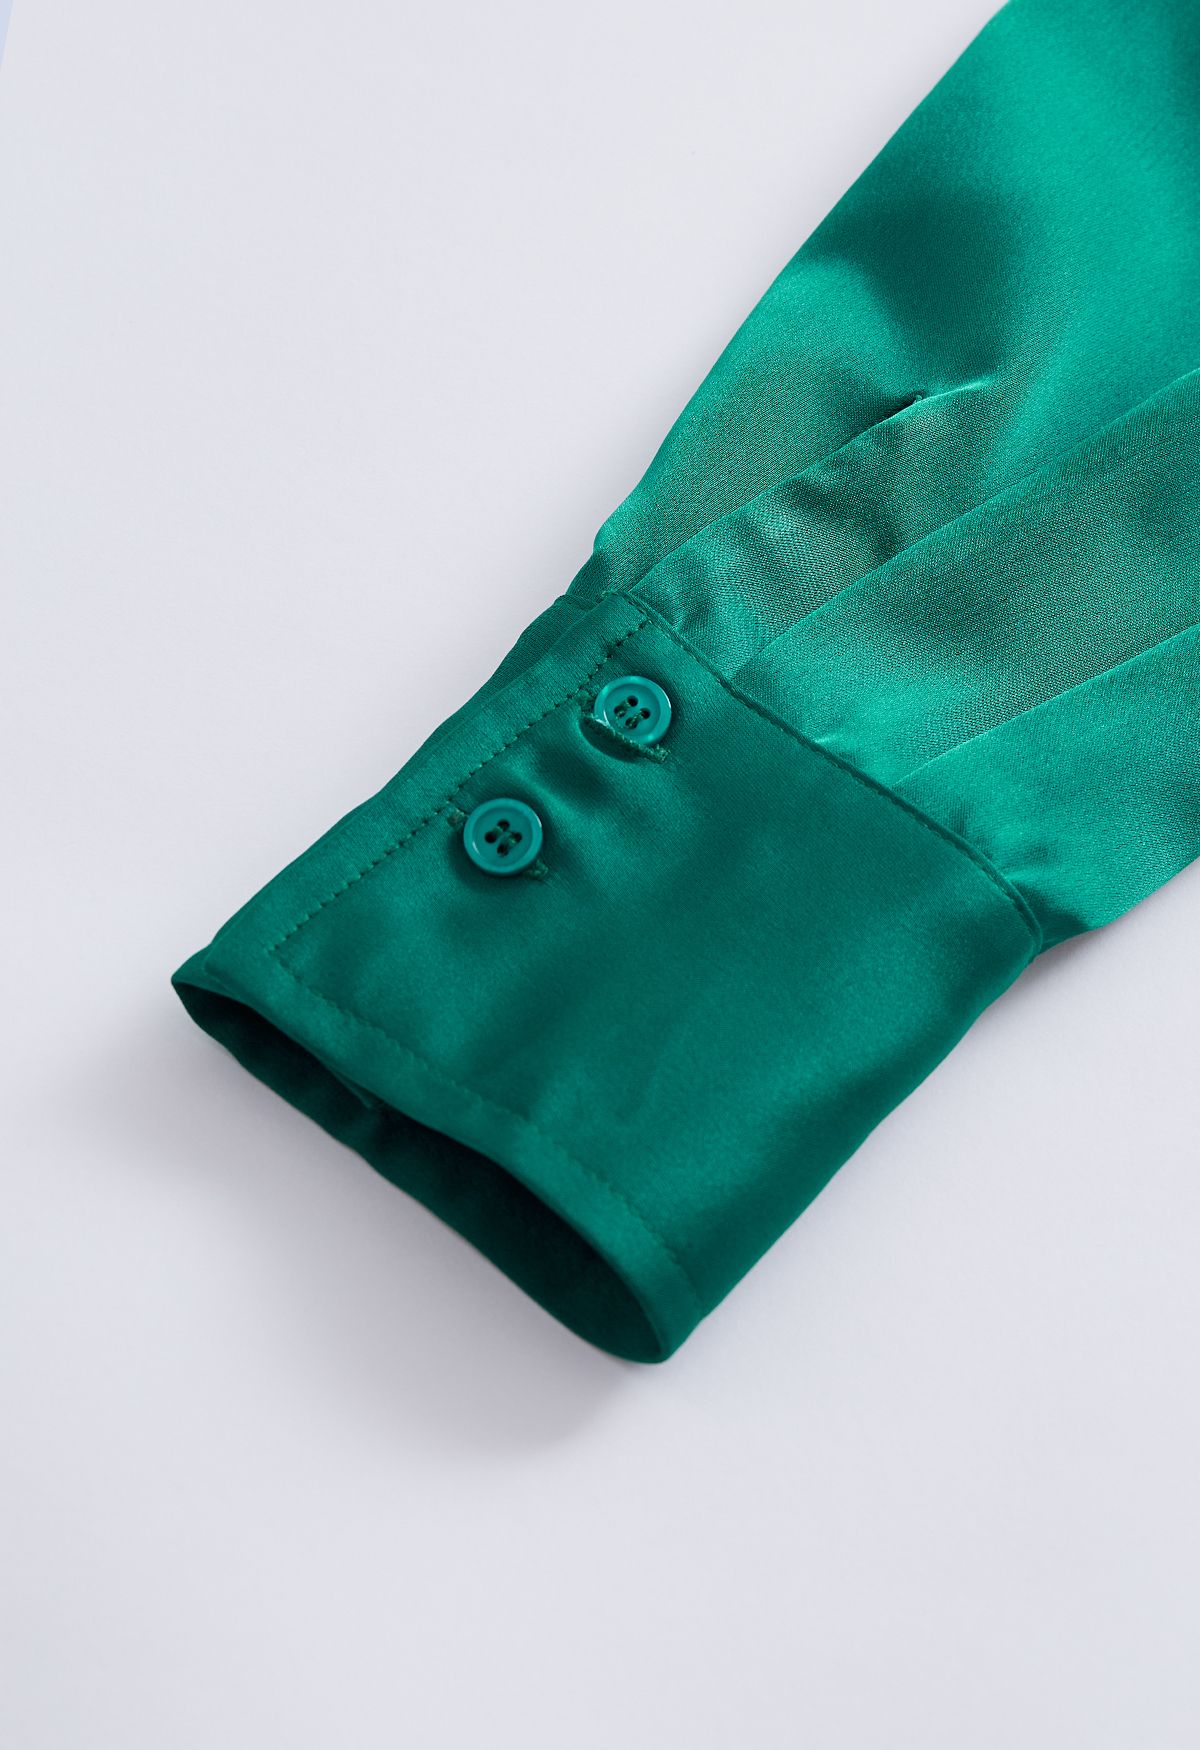 Camisa abotoada com acabamento acetinado em esmeralda